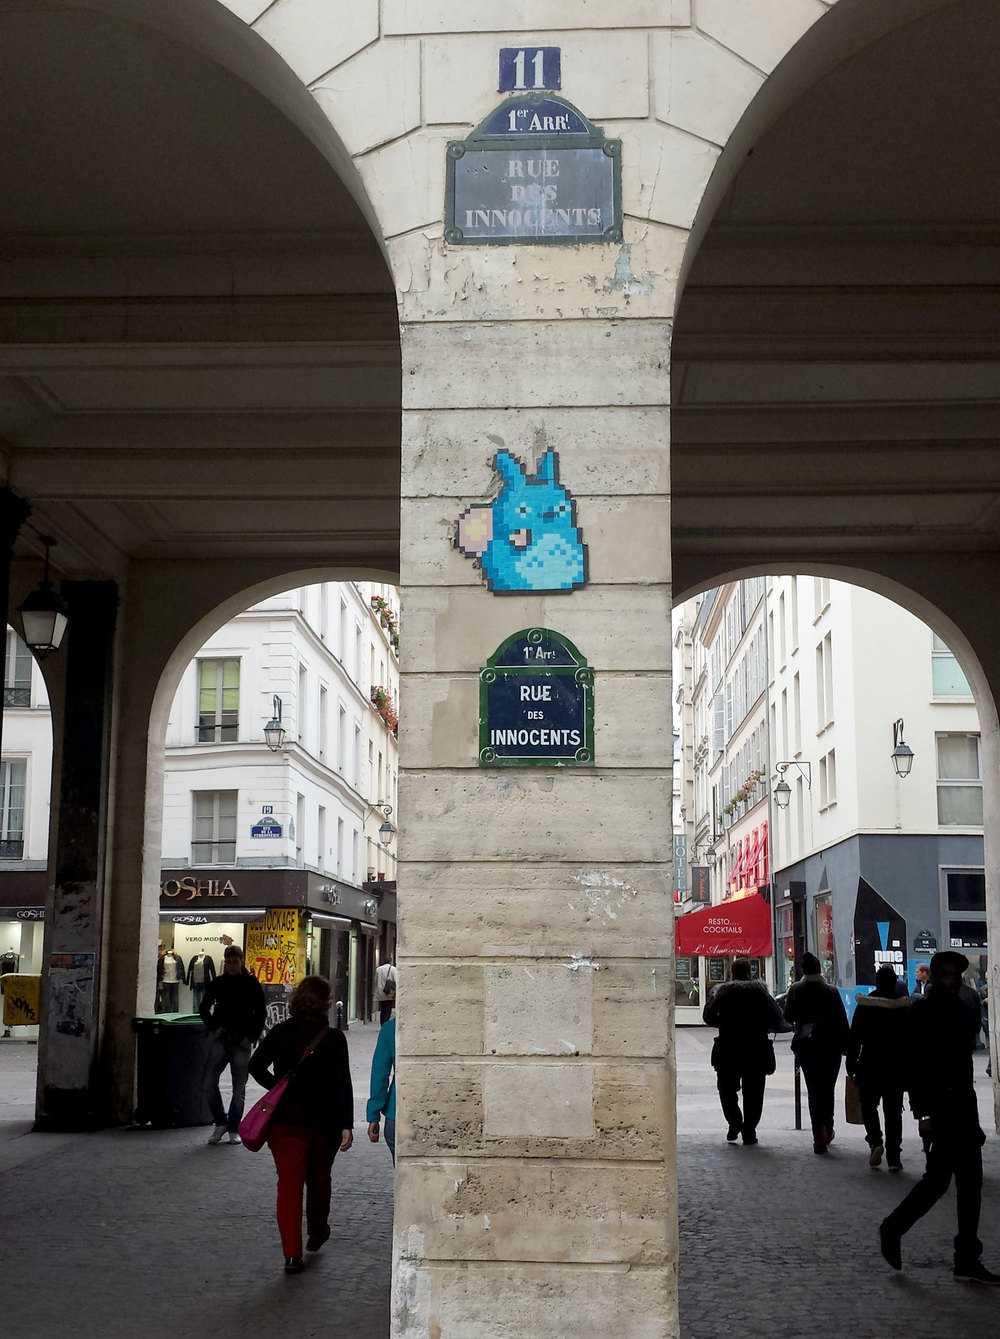  Parisian street art. Invader, possibly? 